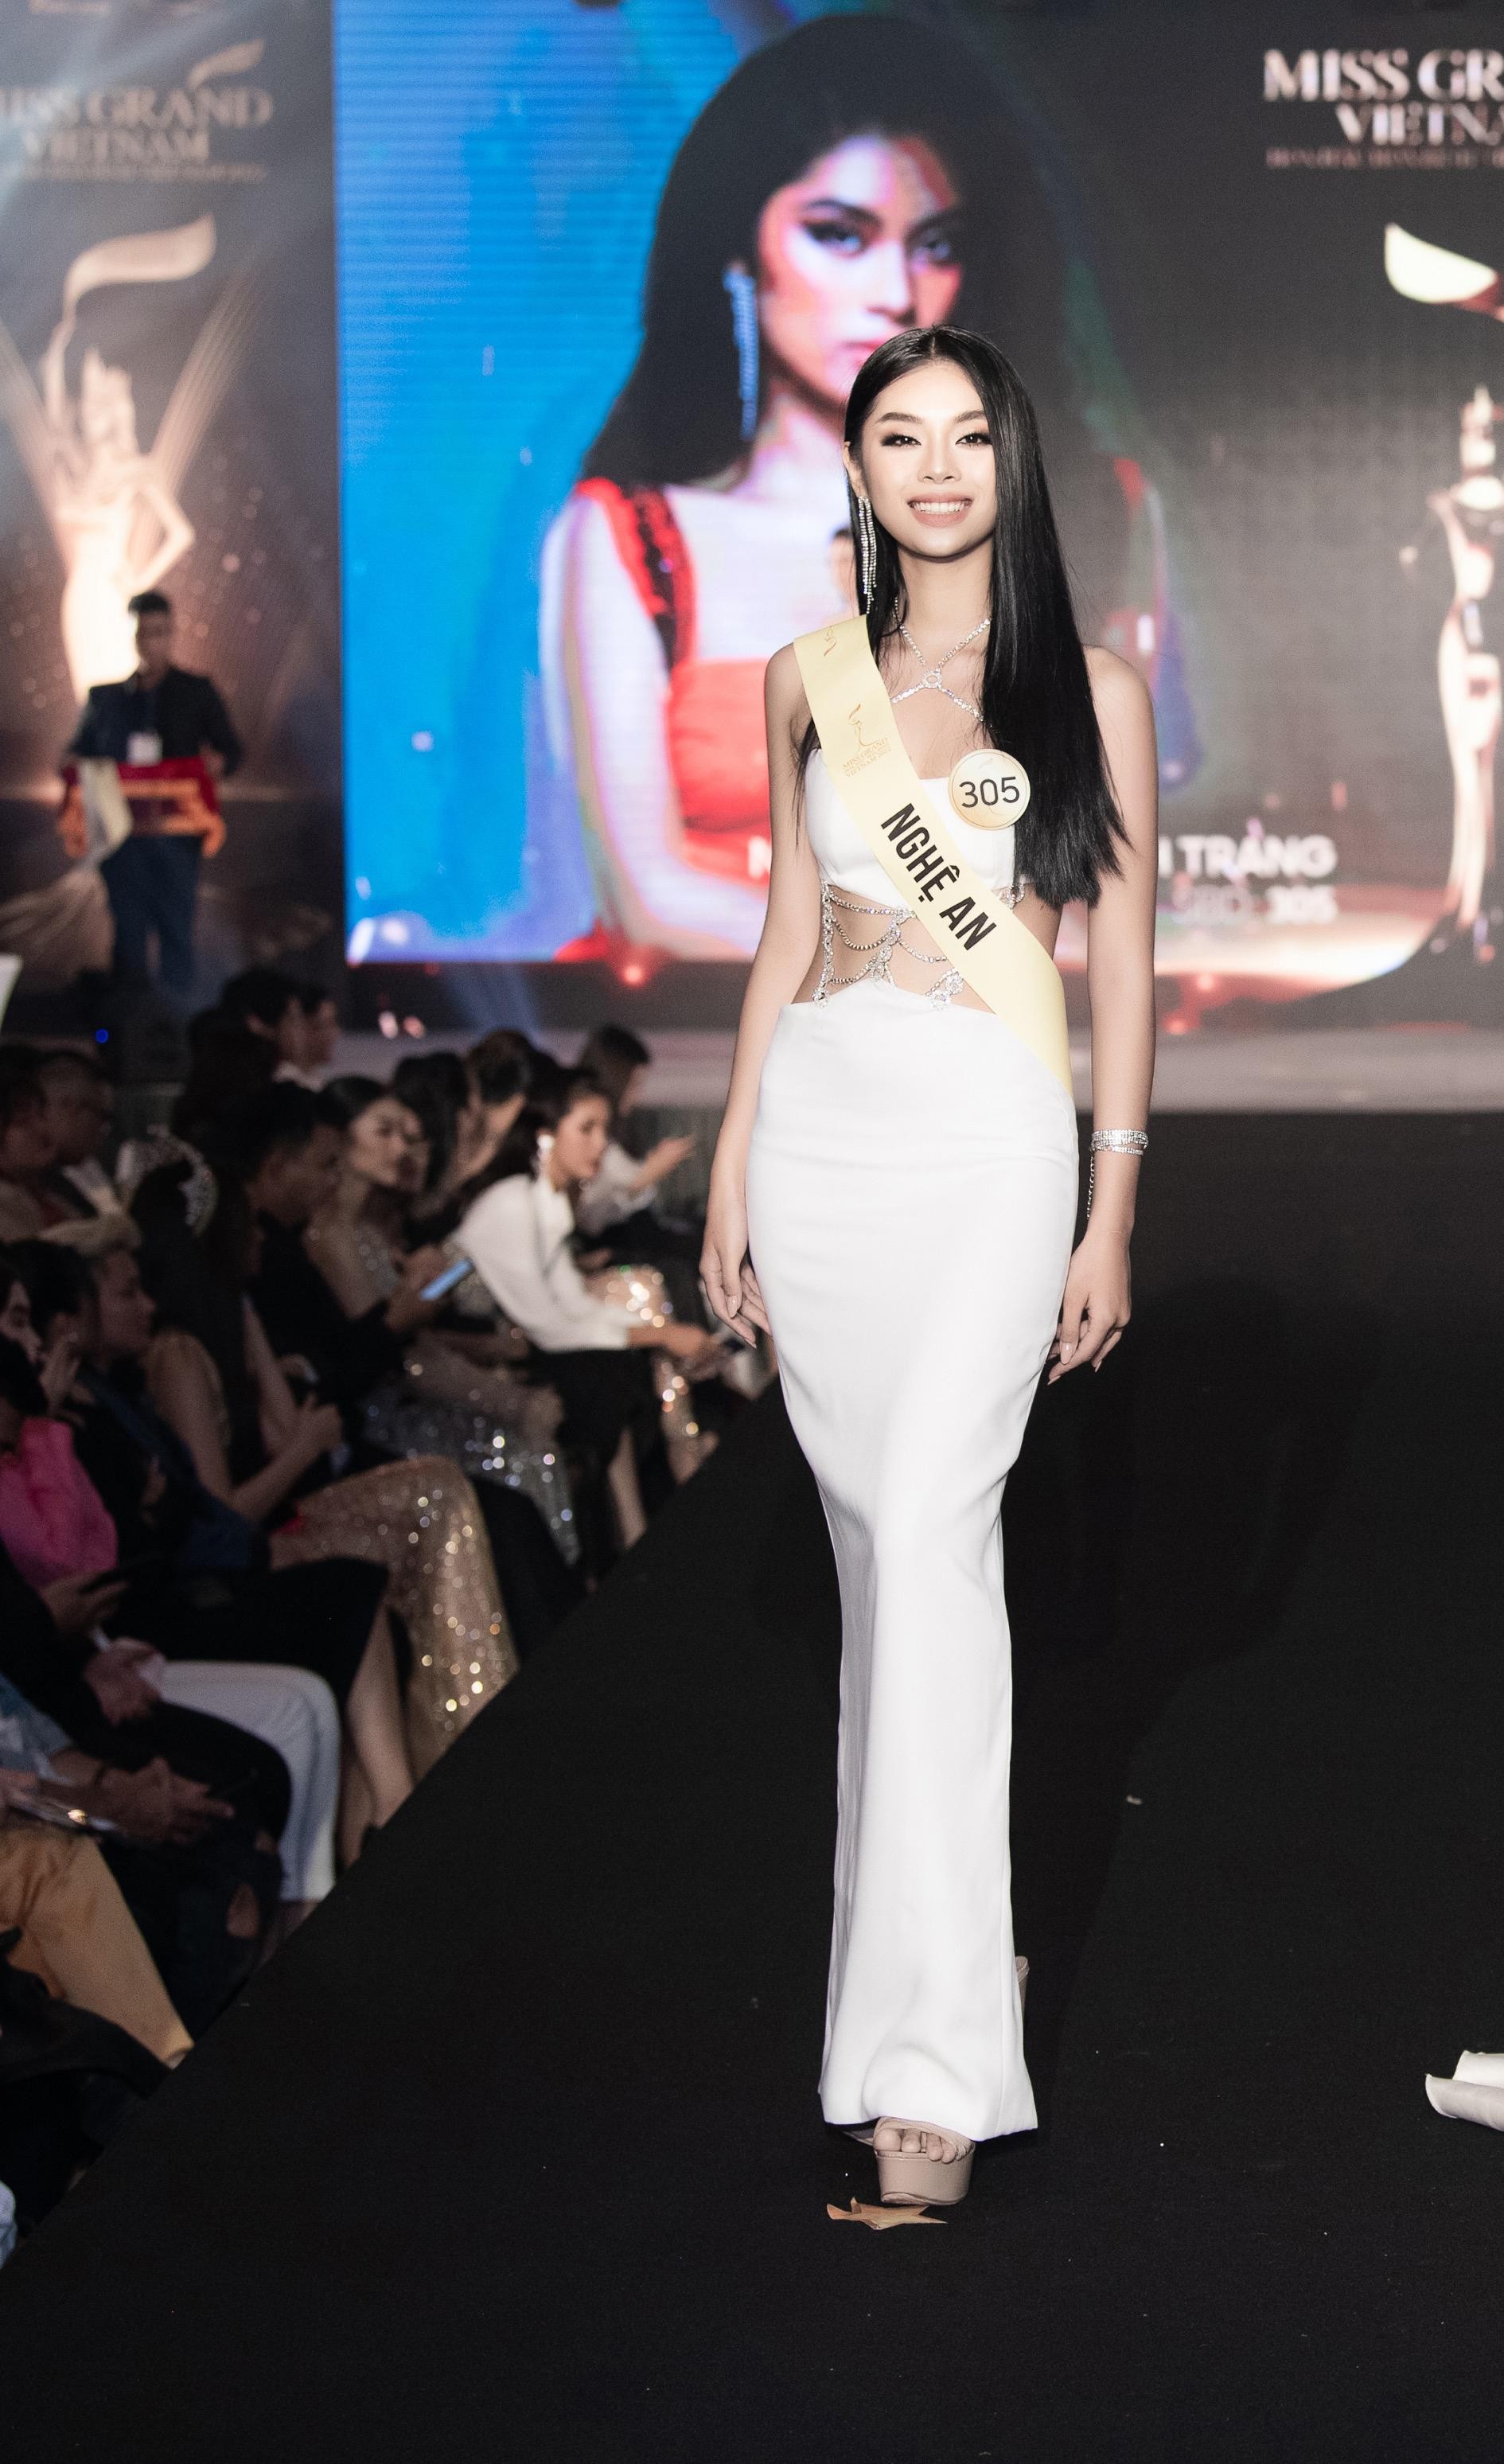 Mai Ngô, Quỳnh Châu tung chiêu catwalk độc đáo tại lễ nhận sash của Miss Grand Vietnam 2022 - Ảnh 10.